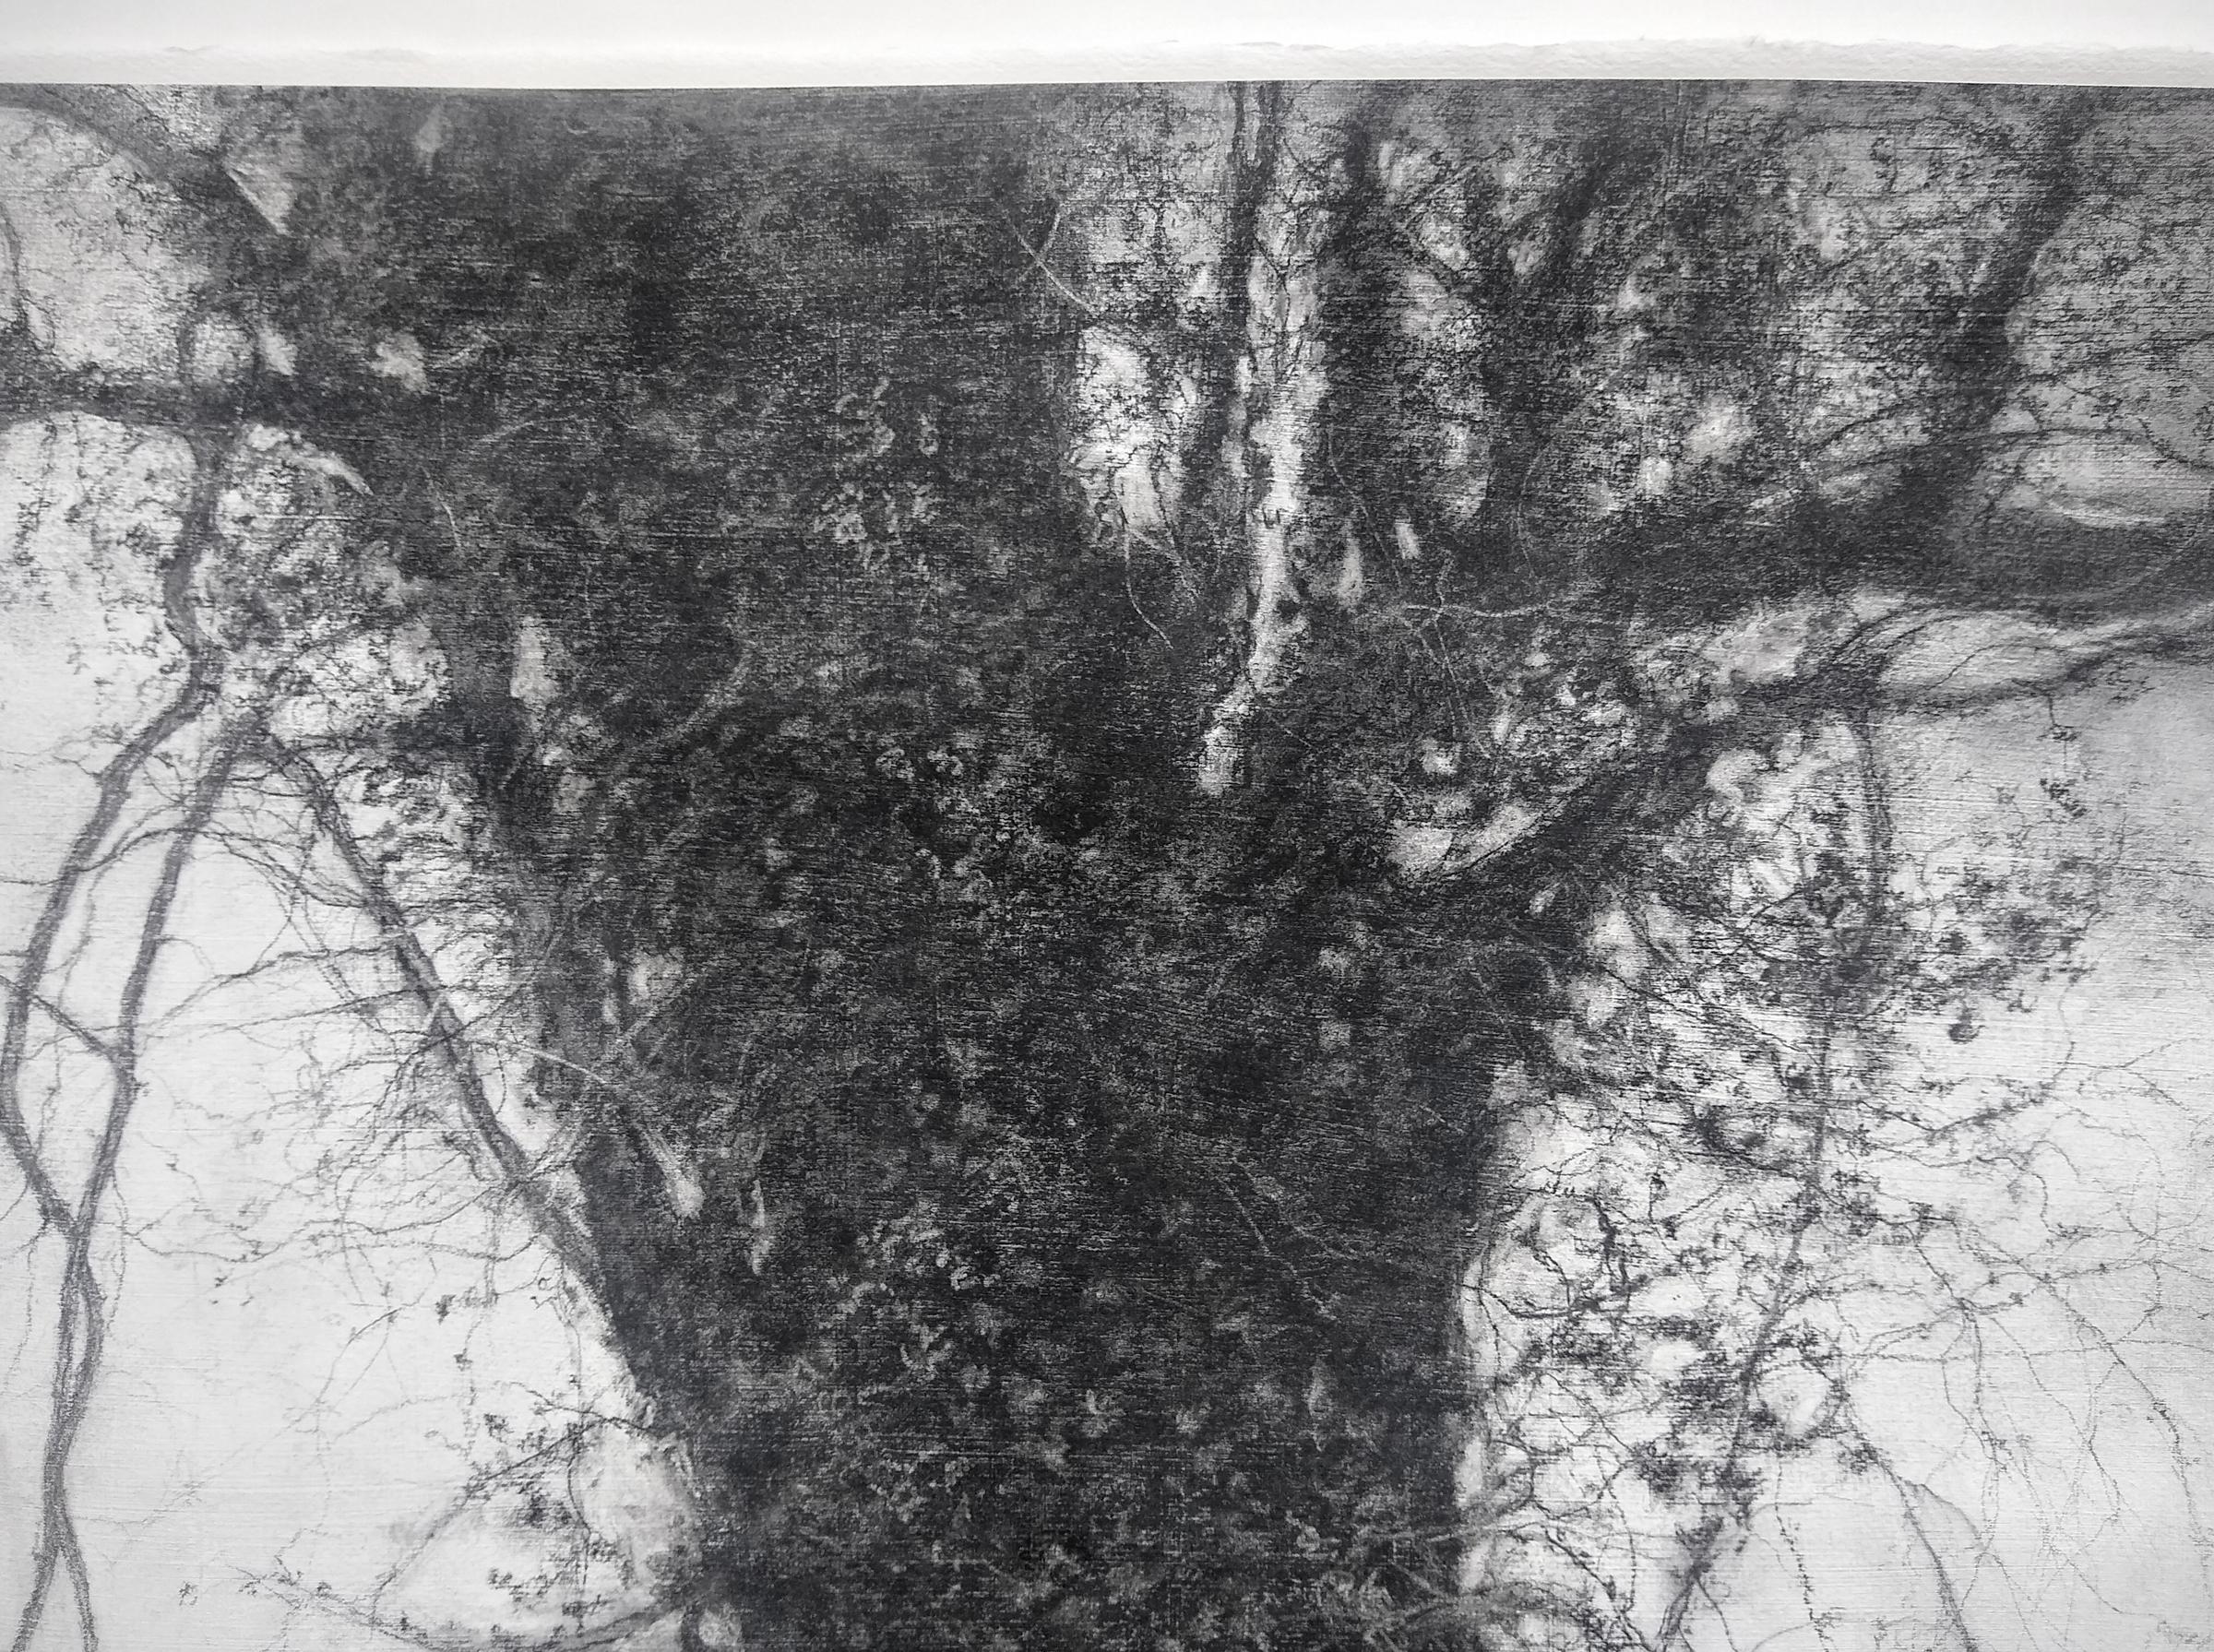 Schwarz-weiße realistische Kohlezeichnung eines großen Baumes im Wind
Sue Bryan, 